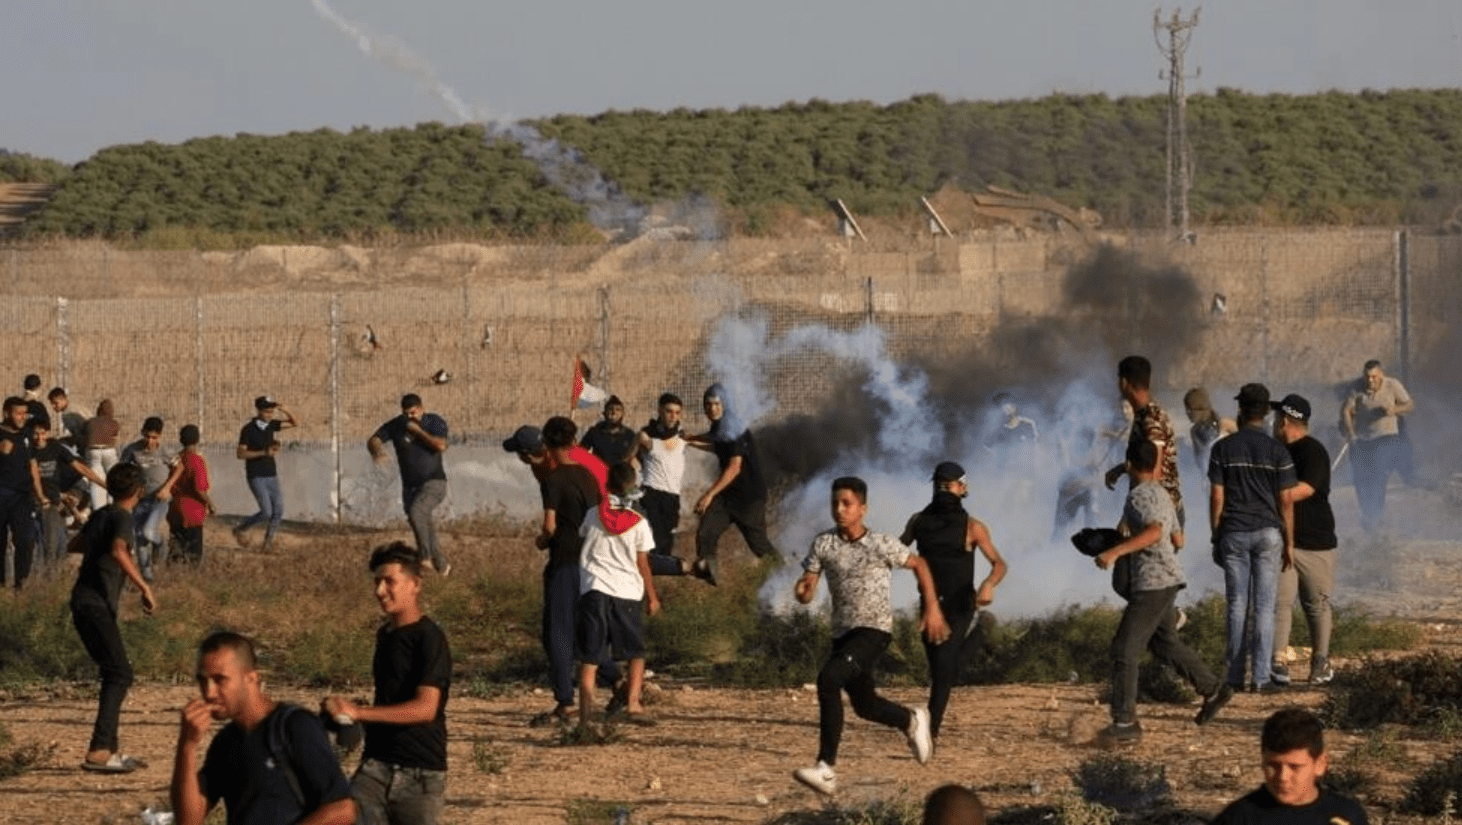 [Video] Ataque mortal interrumpió festival por la paz en Israel